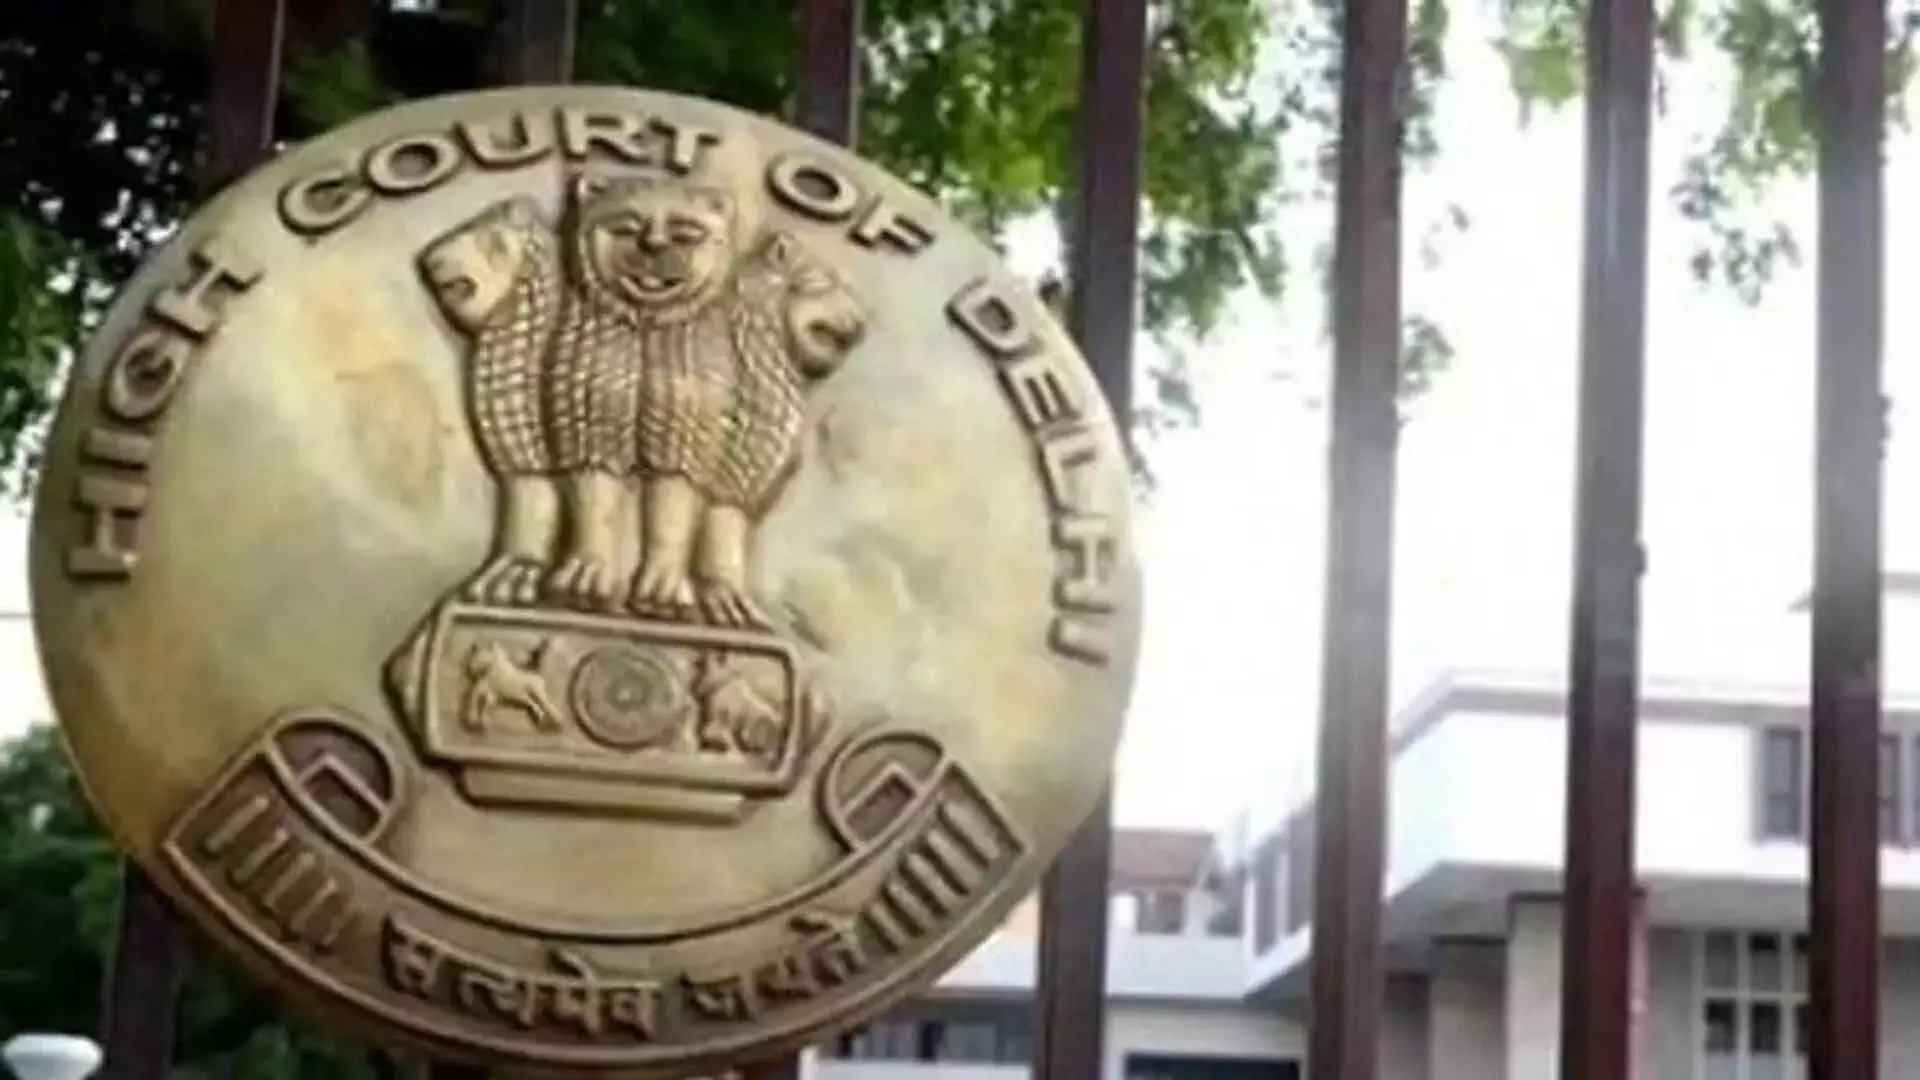 दिल्ली HC ने इंस्टाग्राम पेज के निलंबन पर TV टुडे के मुकदमे में बैकग्रिड USA